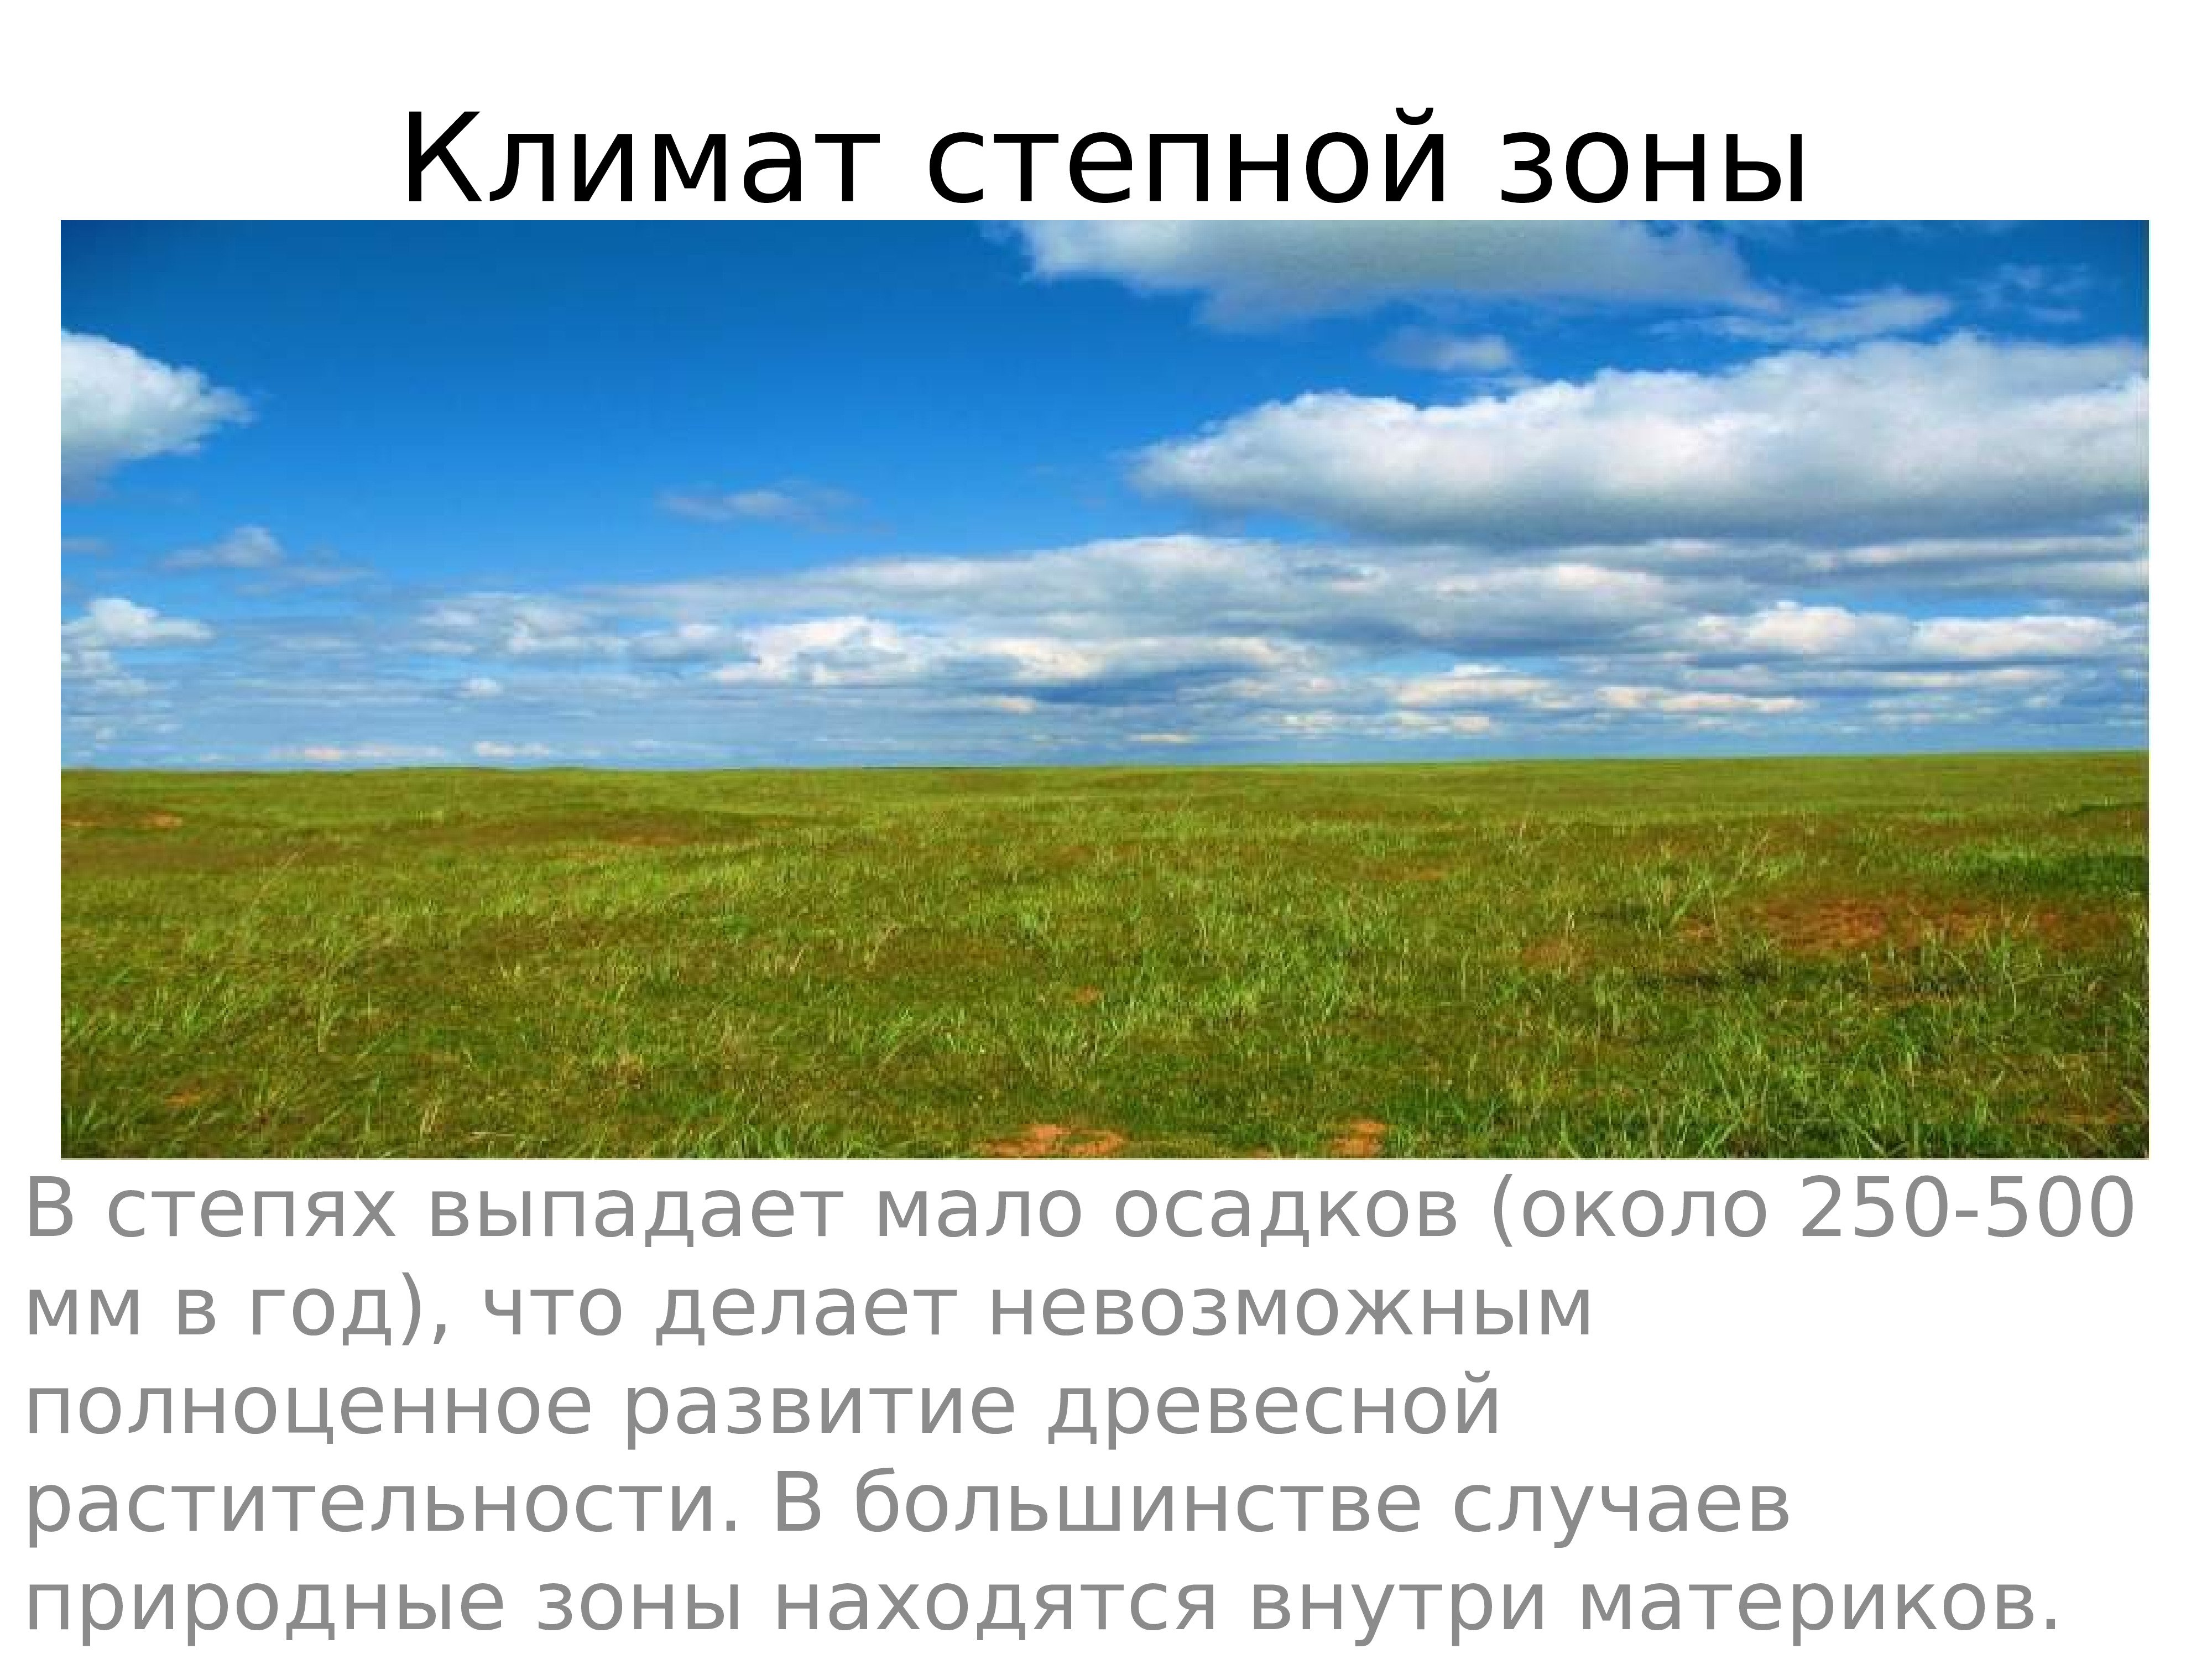 Значение степи в жизни человека. Почва лесостепи и степи в Евразии. Природные зоны России степи и лесостепи. Зоны лесостепей и степей климат. Климат лесостепной и Степной зоны.